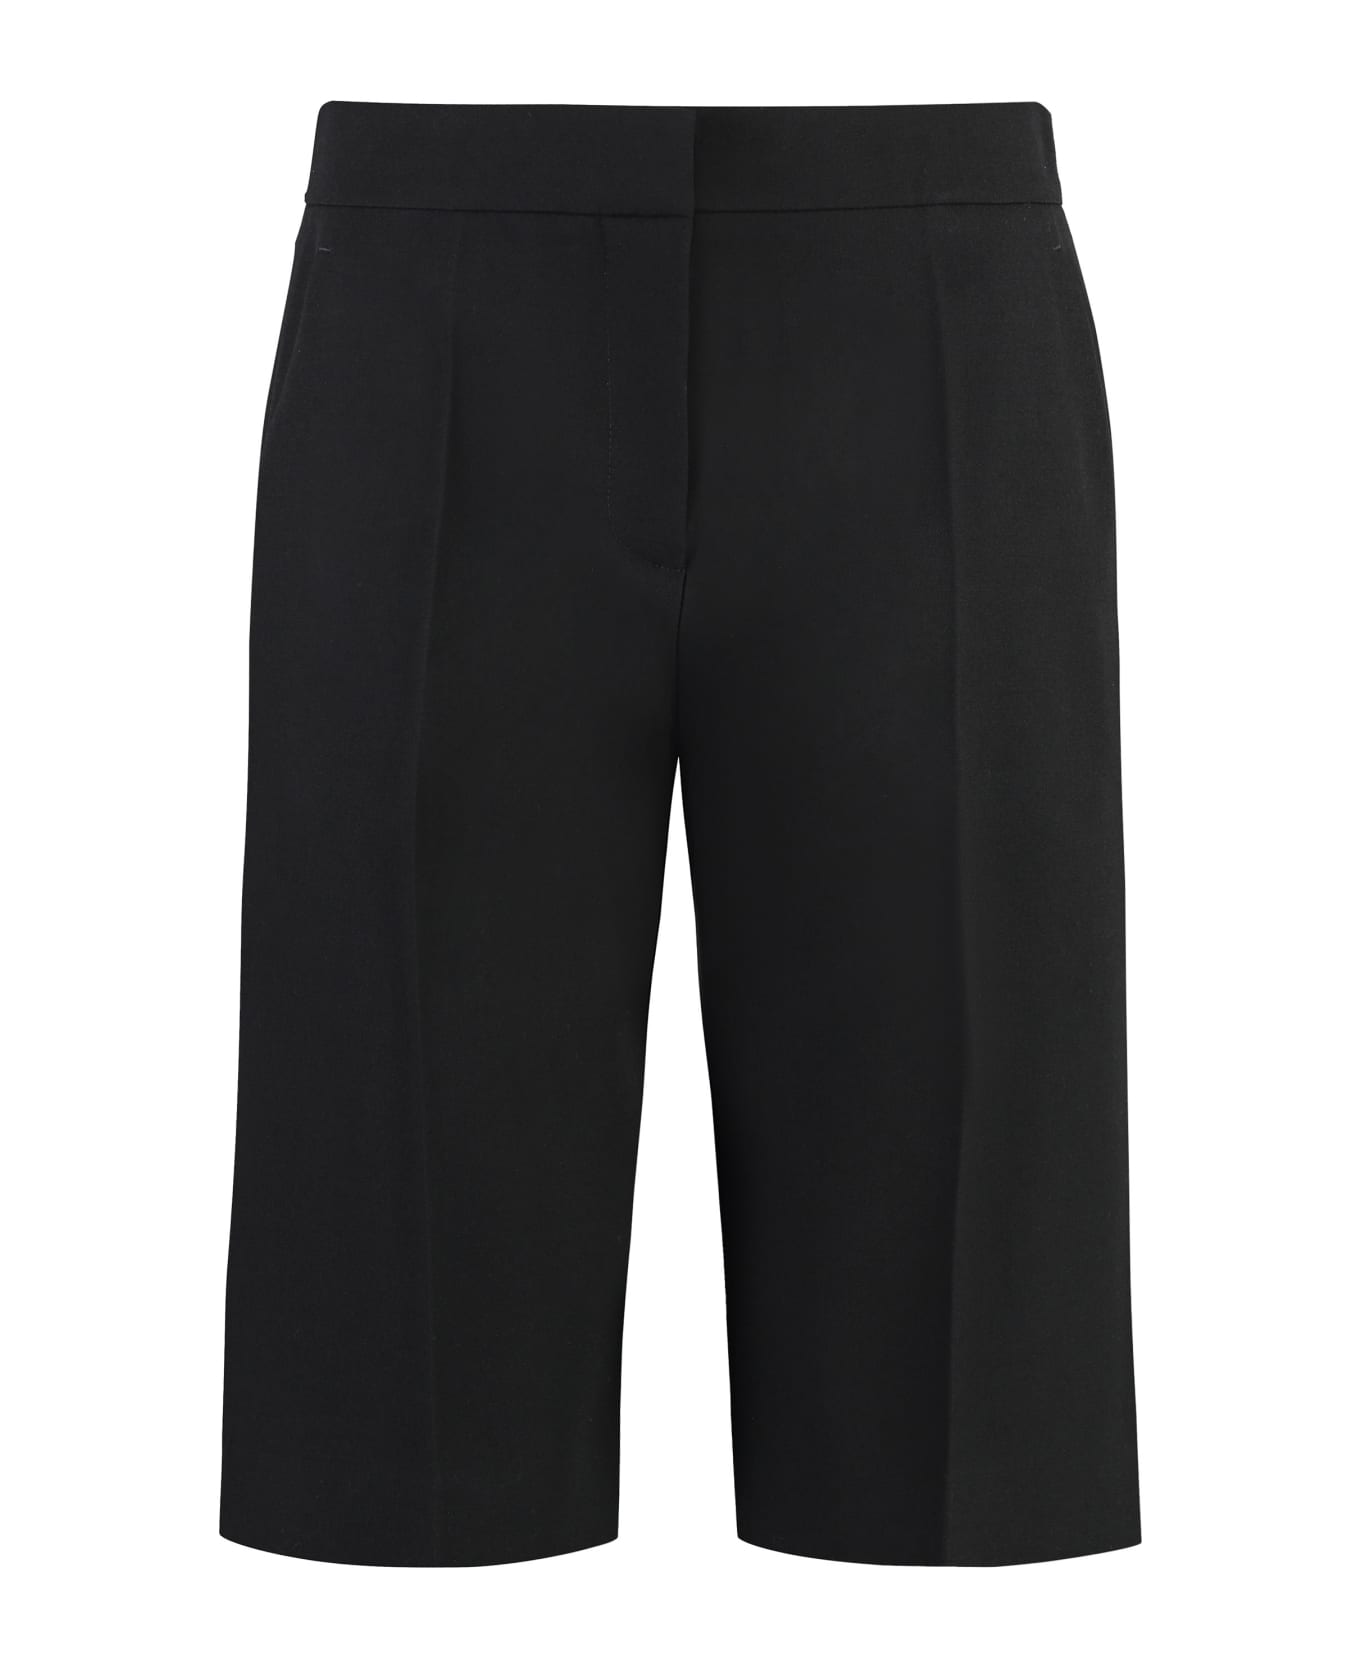 Givenchy Wool Shorts - black